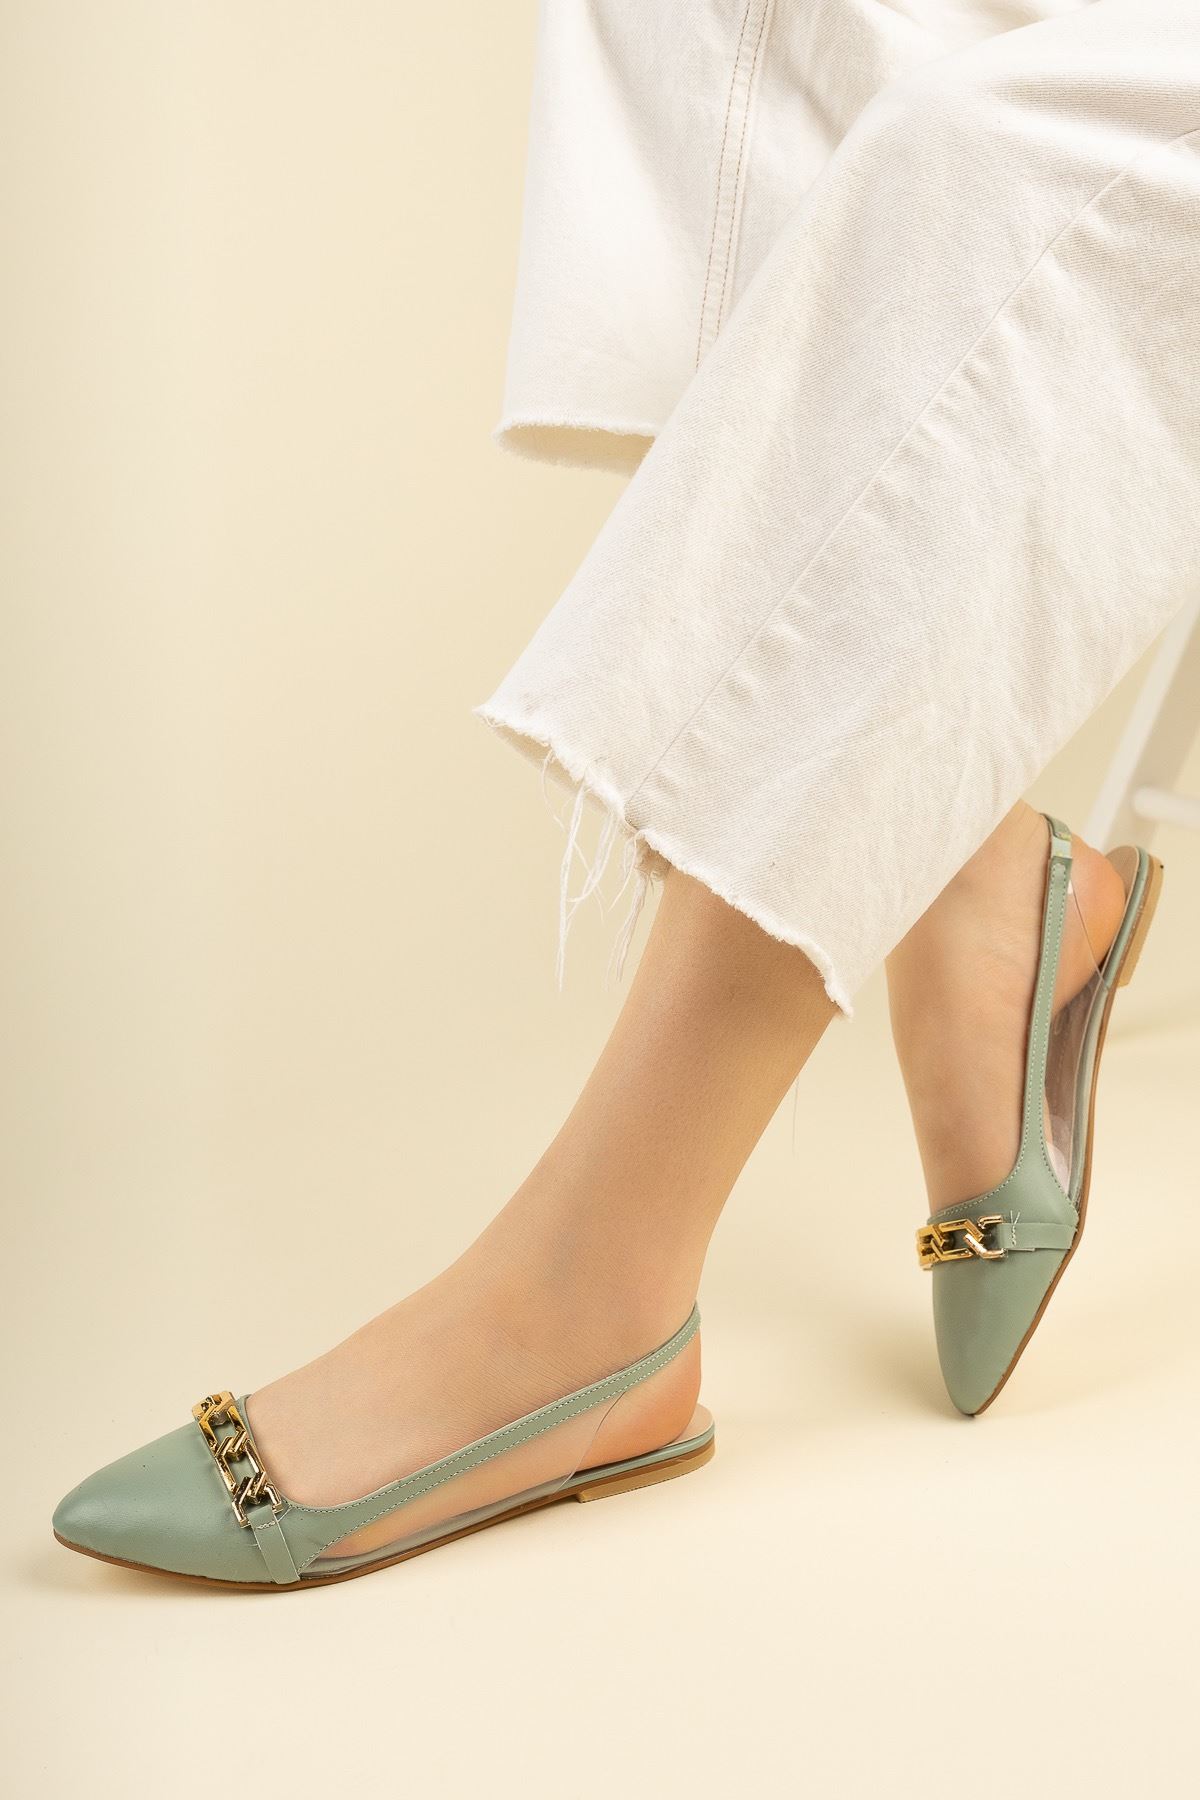 Kadın Dalian Tokalı Babet Ayakkabı - Yeşil Deri